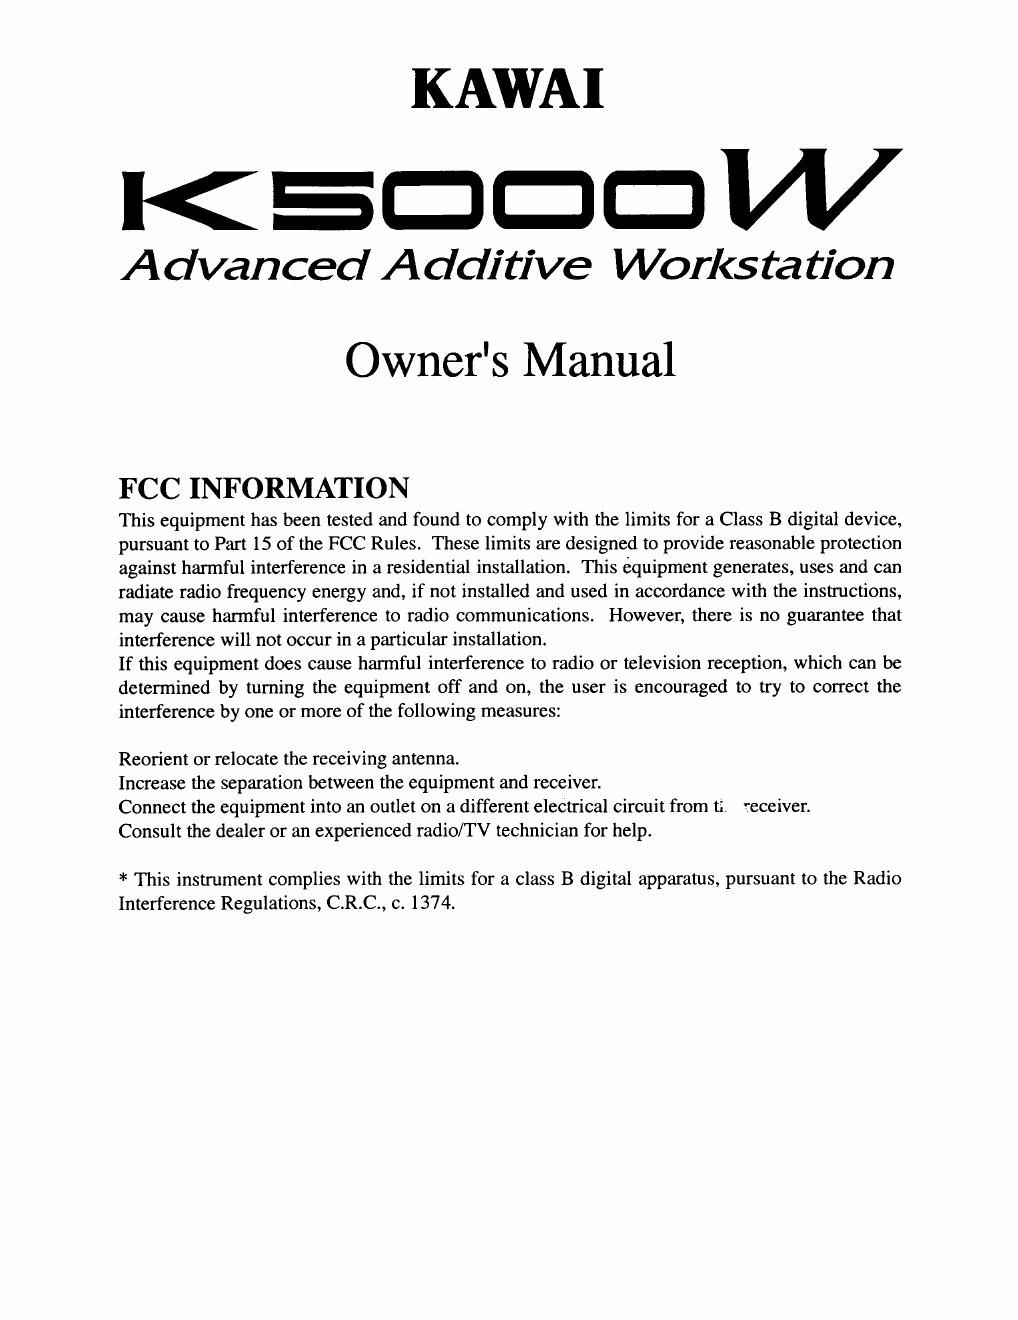 kawai k 5000 w owner manual